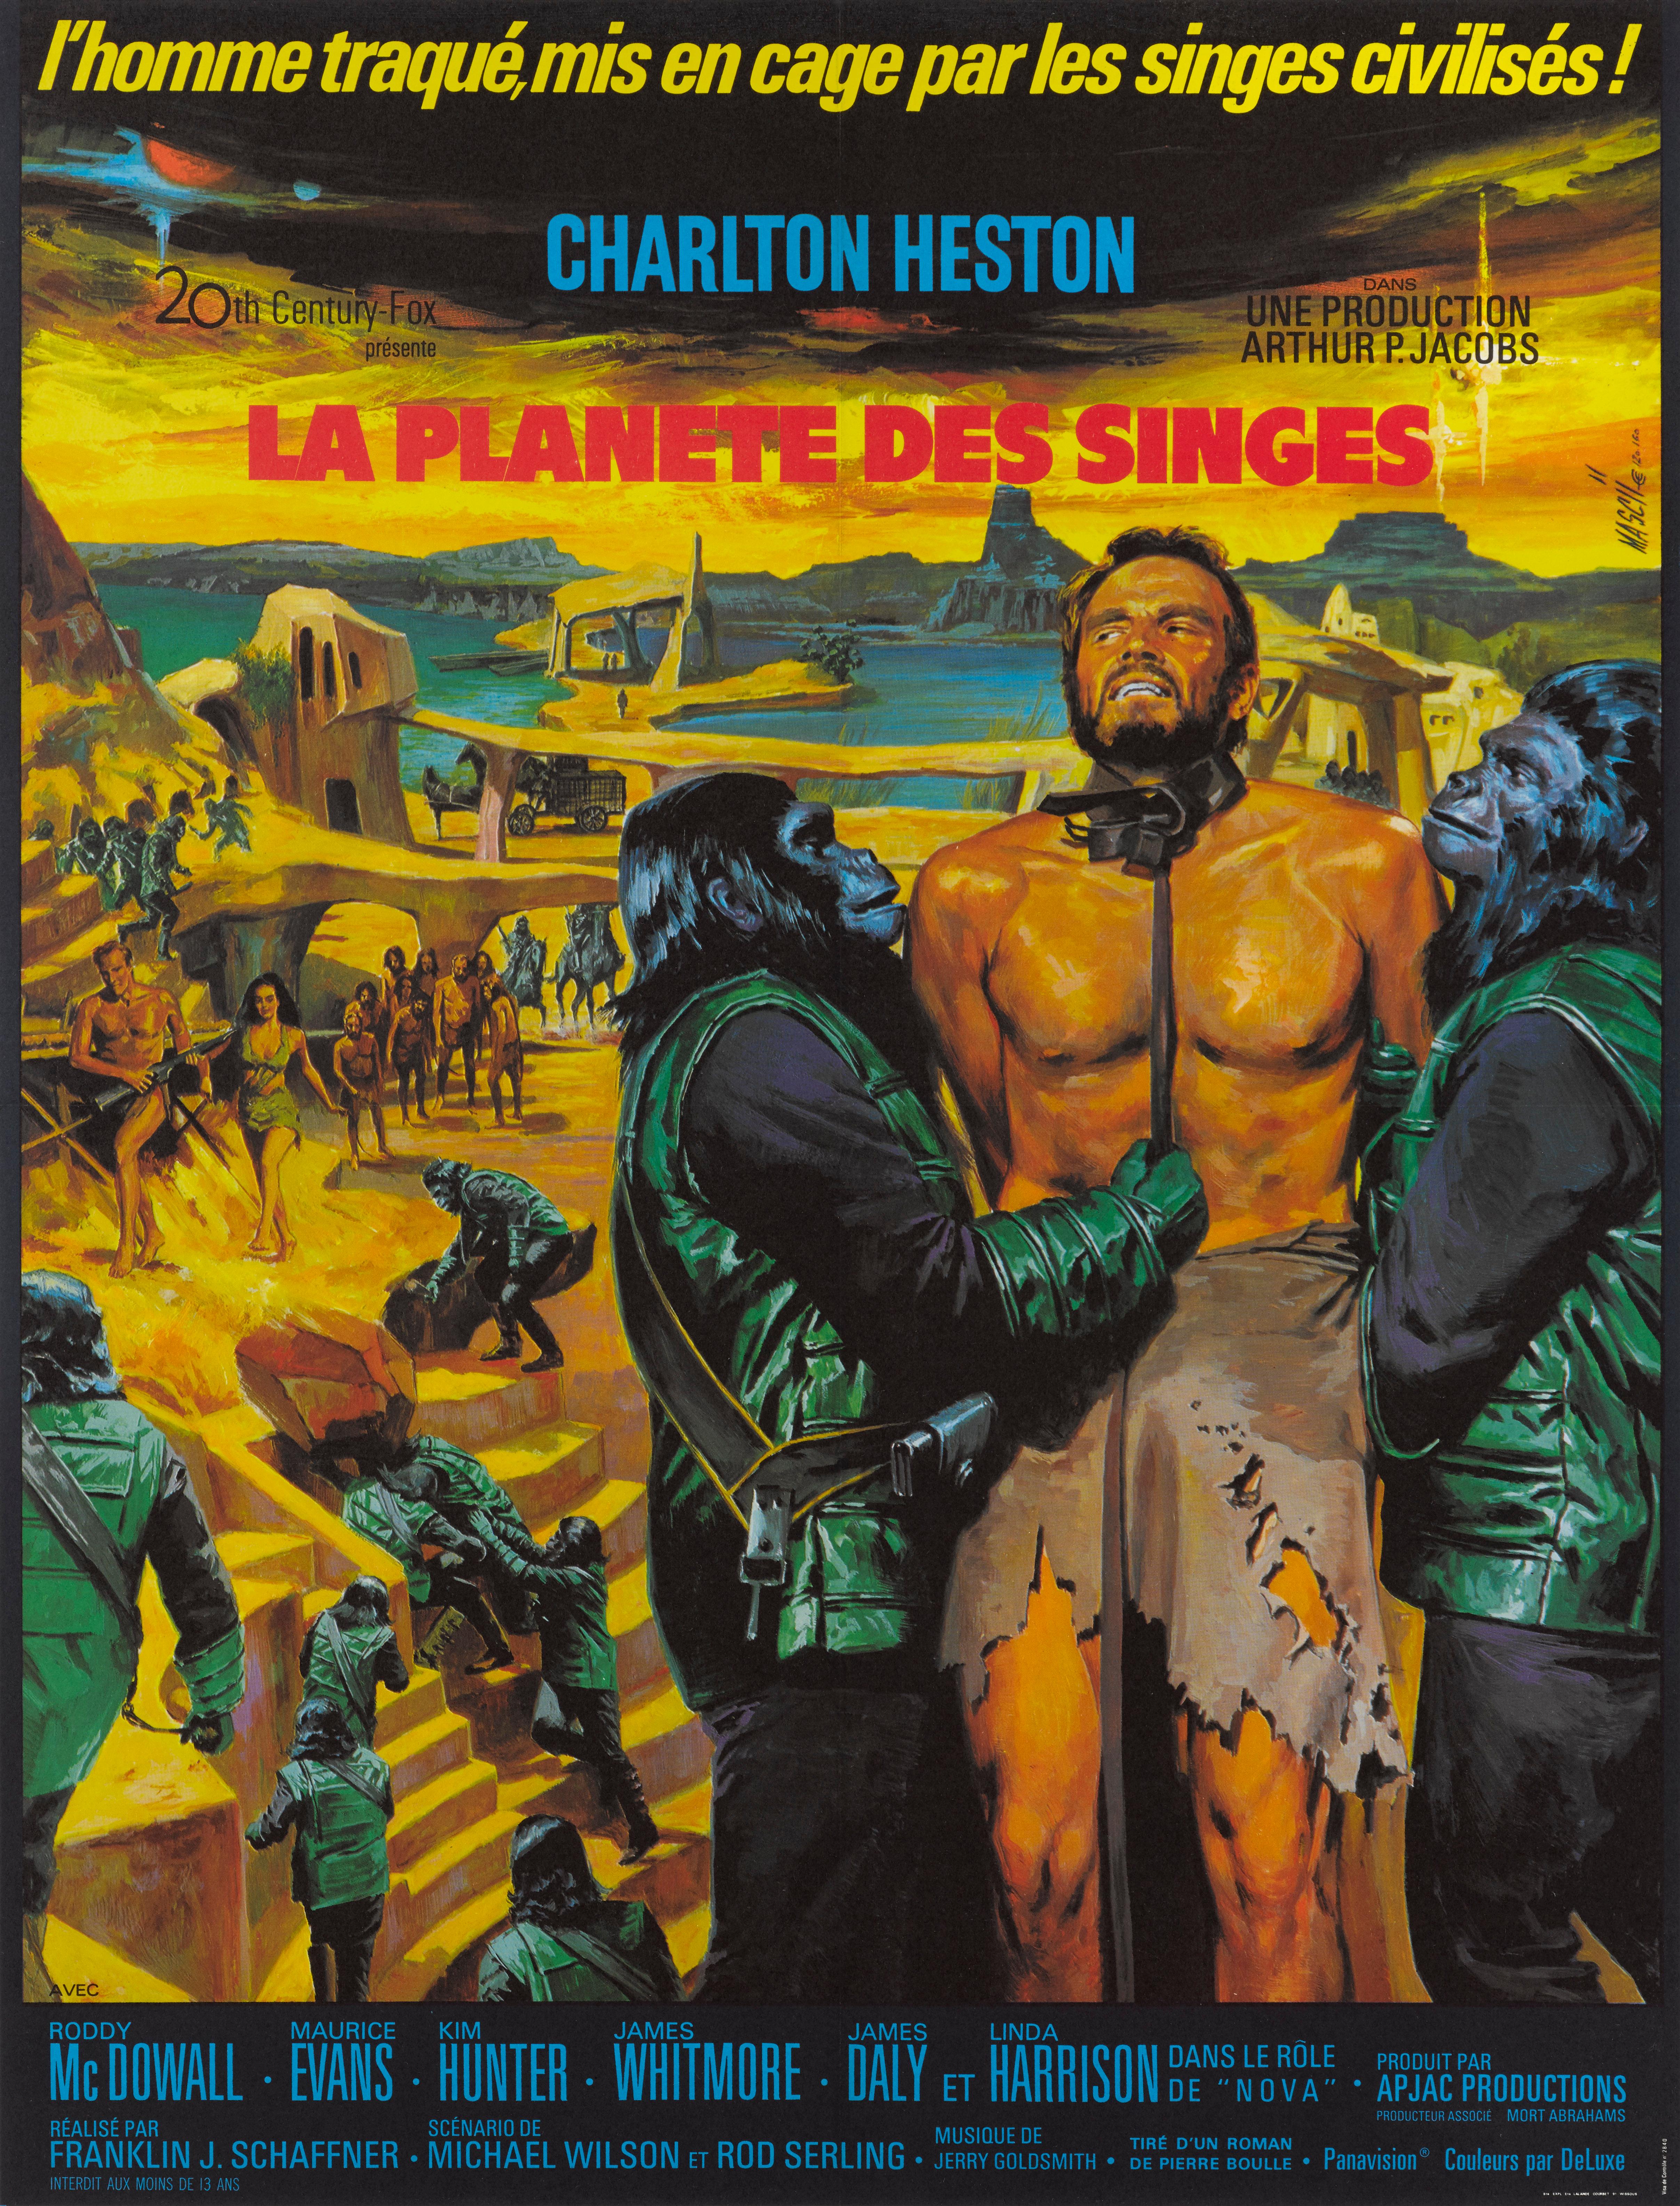 Affiche de film française originale pour le premier film de la Planète des singes en 1968.
L'illustration de cette affiche est unique à la sortie française du film et a été conçue par Jean Mascii (1926-2003), l'un des affichistes les plus connus de